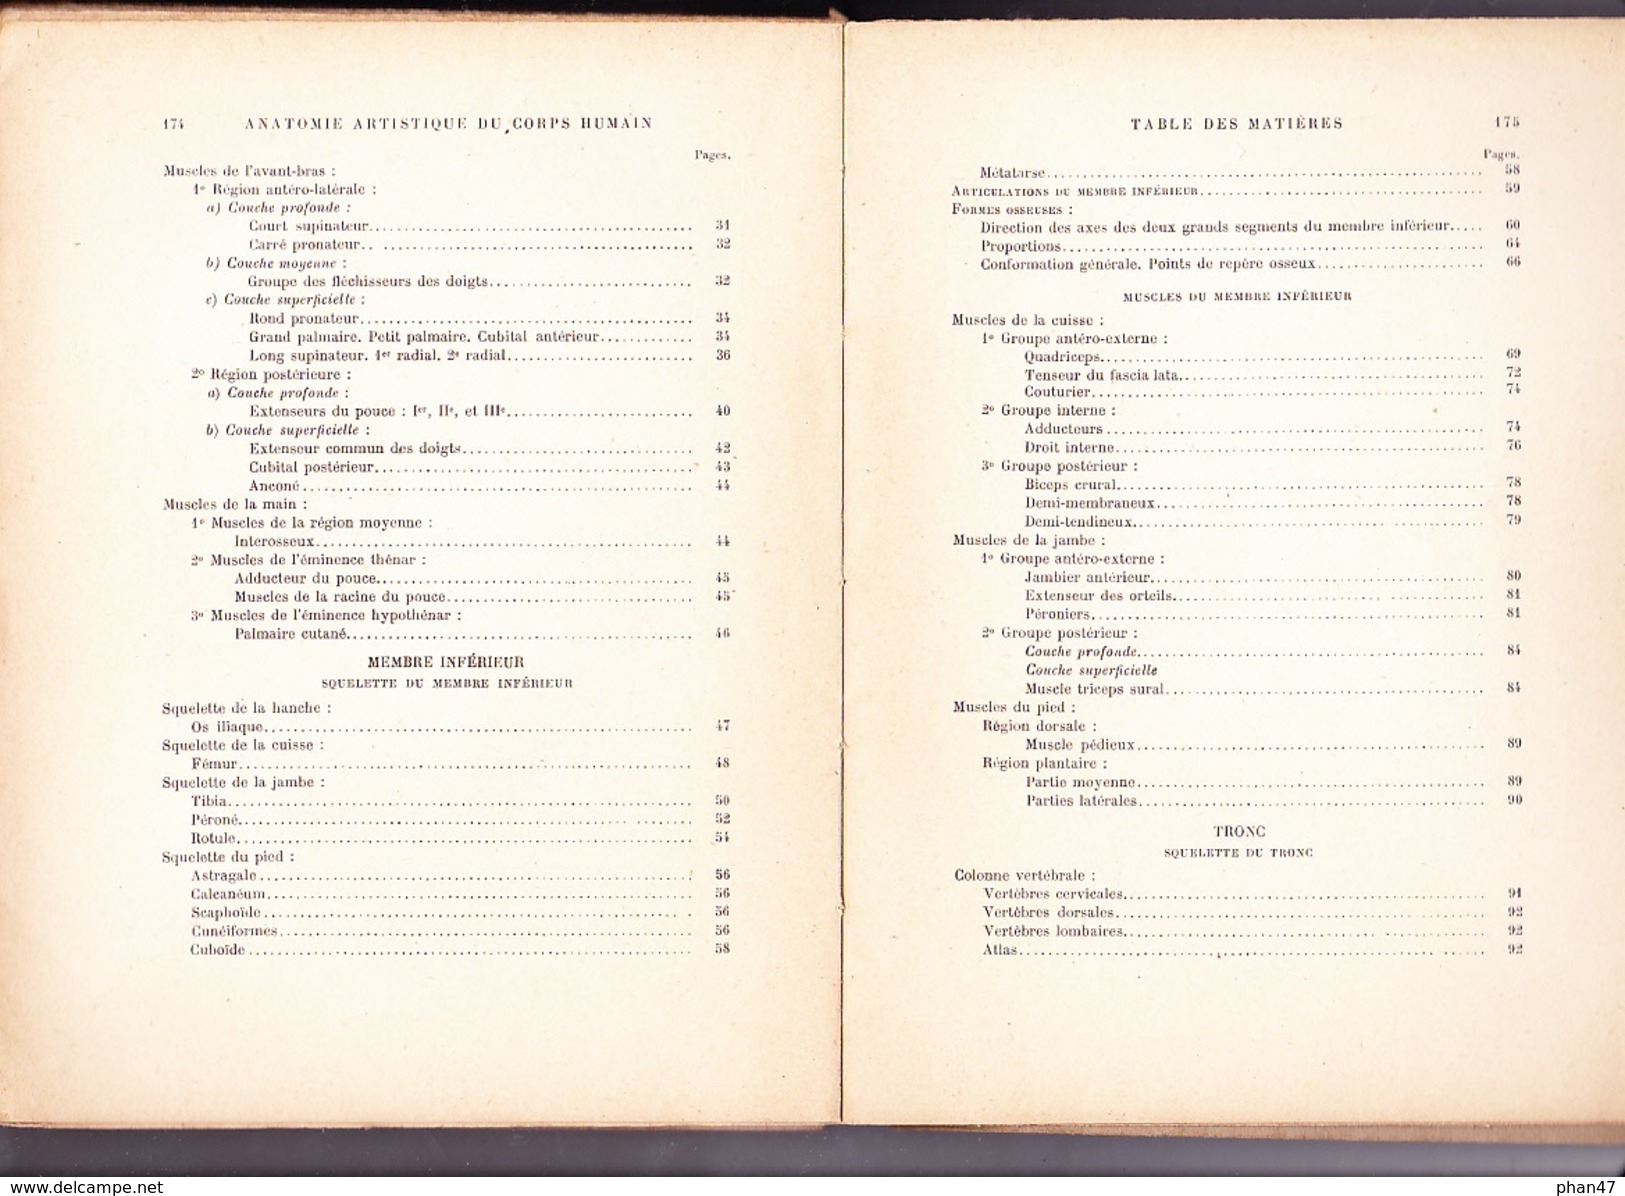 ELEMENTS DE PERSPECTIVE par Armand CASSAGNE Peintre Officiel de l'Instruction publique, Ed. HENRI LAURENS SD 1930 env.